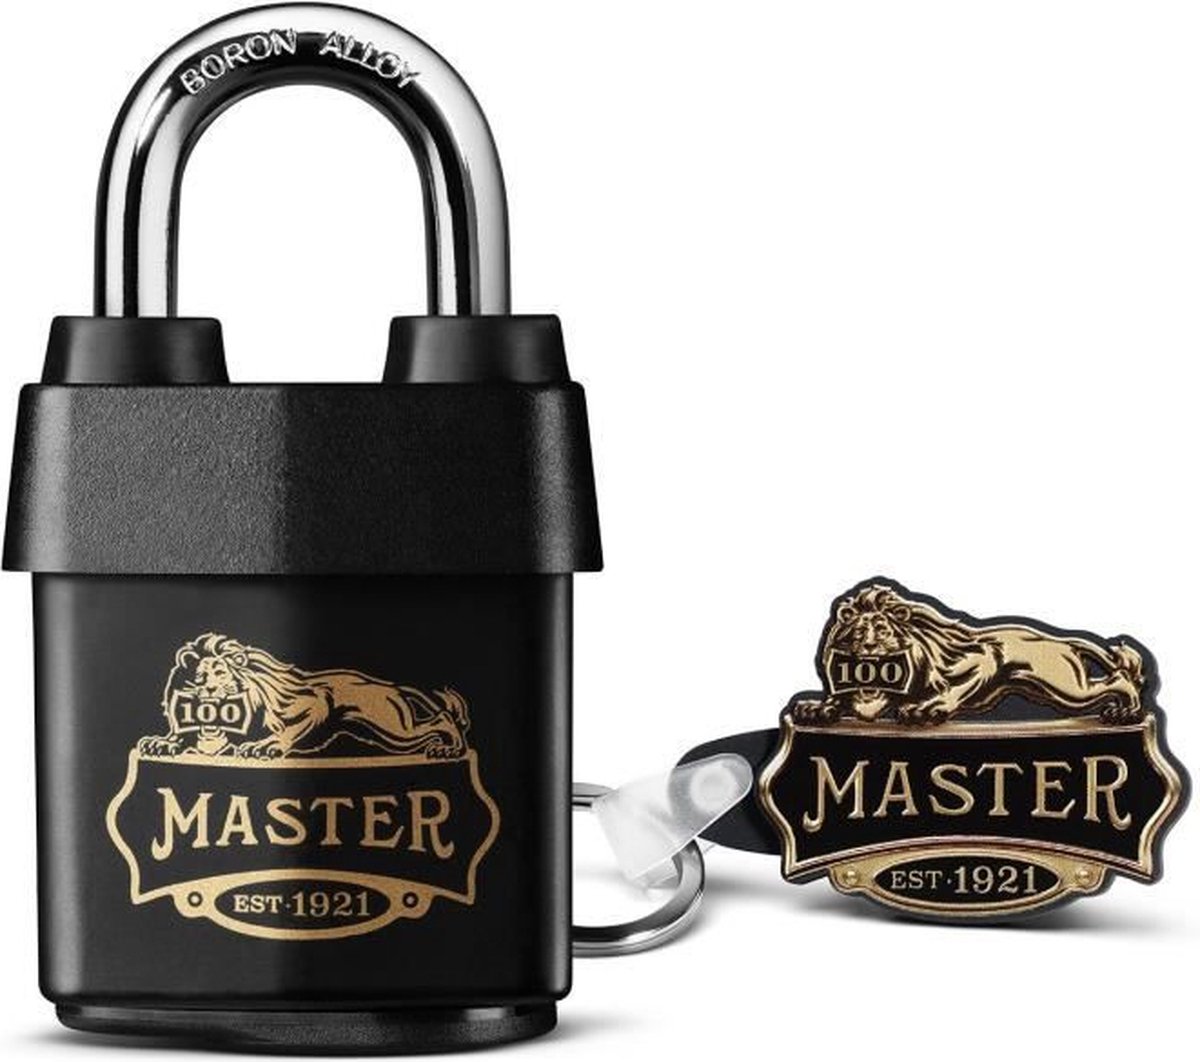 Master Lock 1921EURDCC Hoog beveiligd waterdicht hangslot met 100 jaar logo, zwart, 97 x 54 x 32 mm